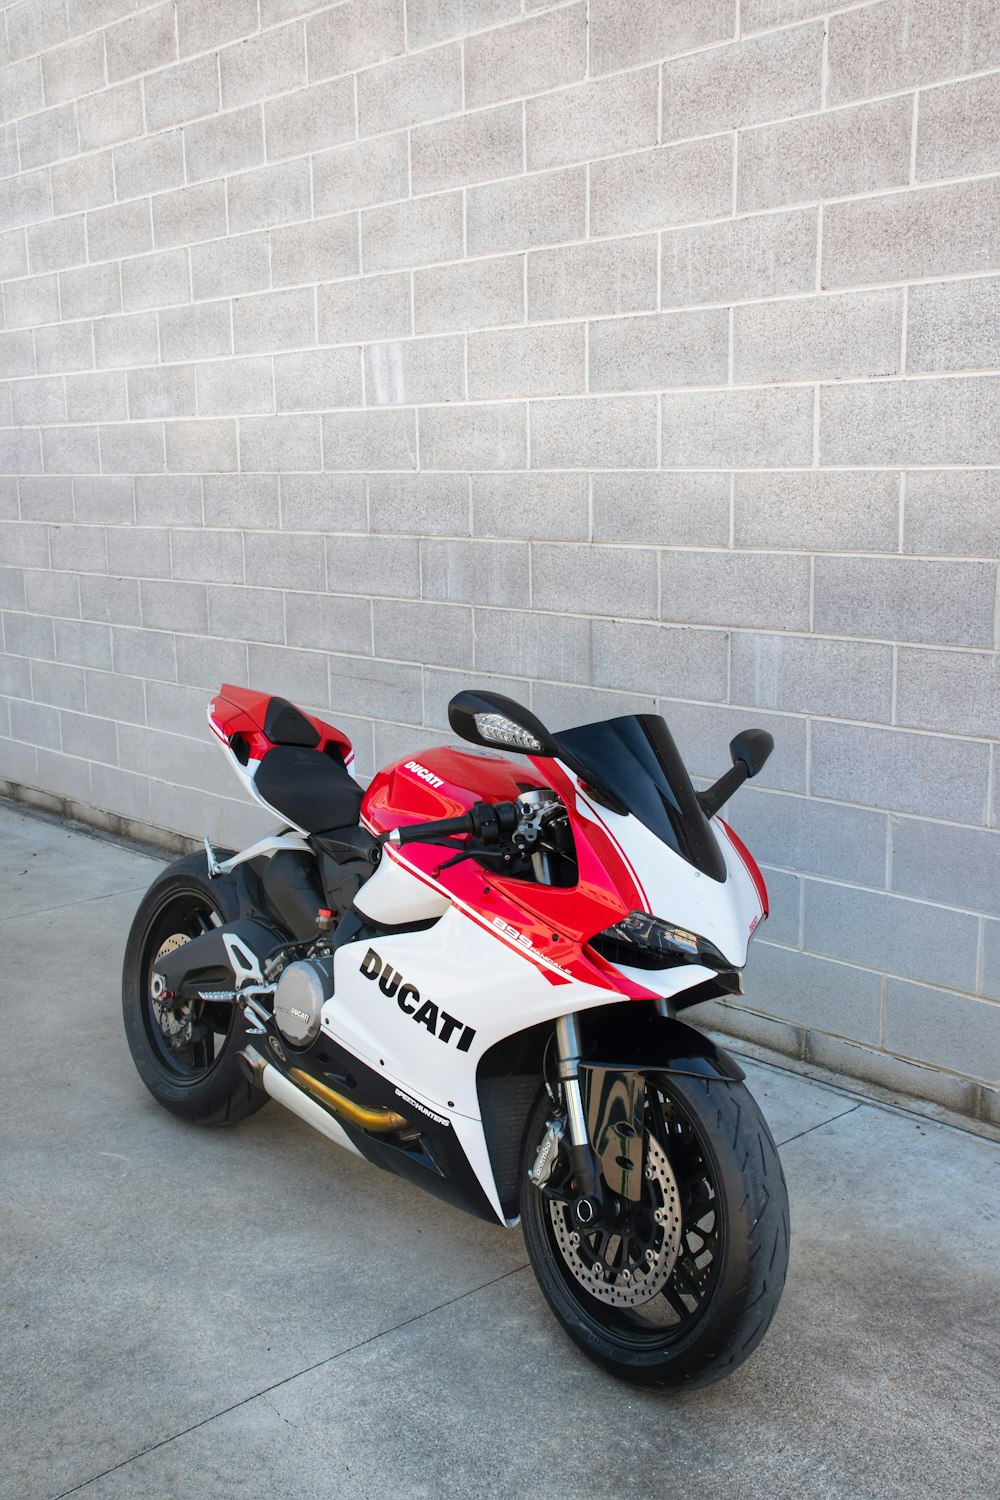 Vélo de sport Honda rouge et blanc garé à côté d’un mur blanc